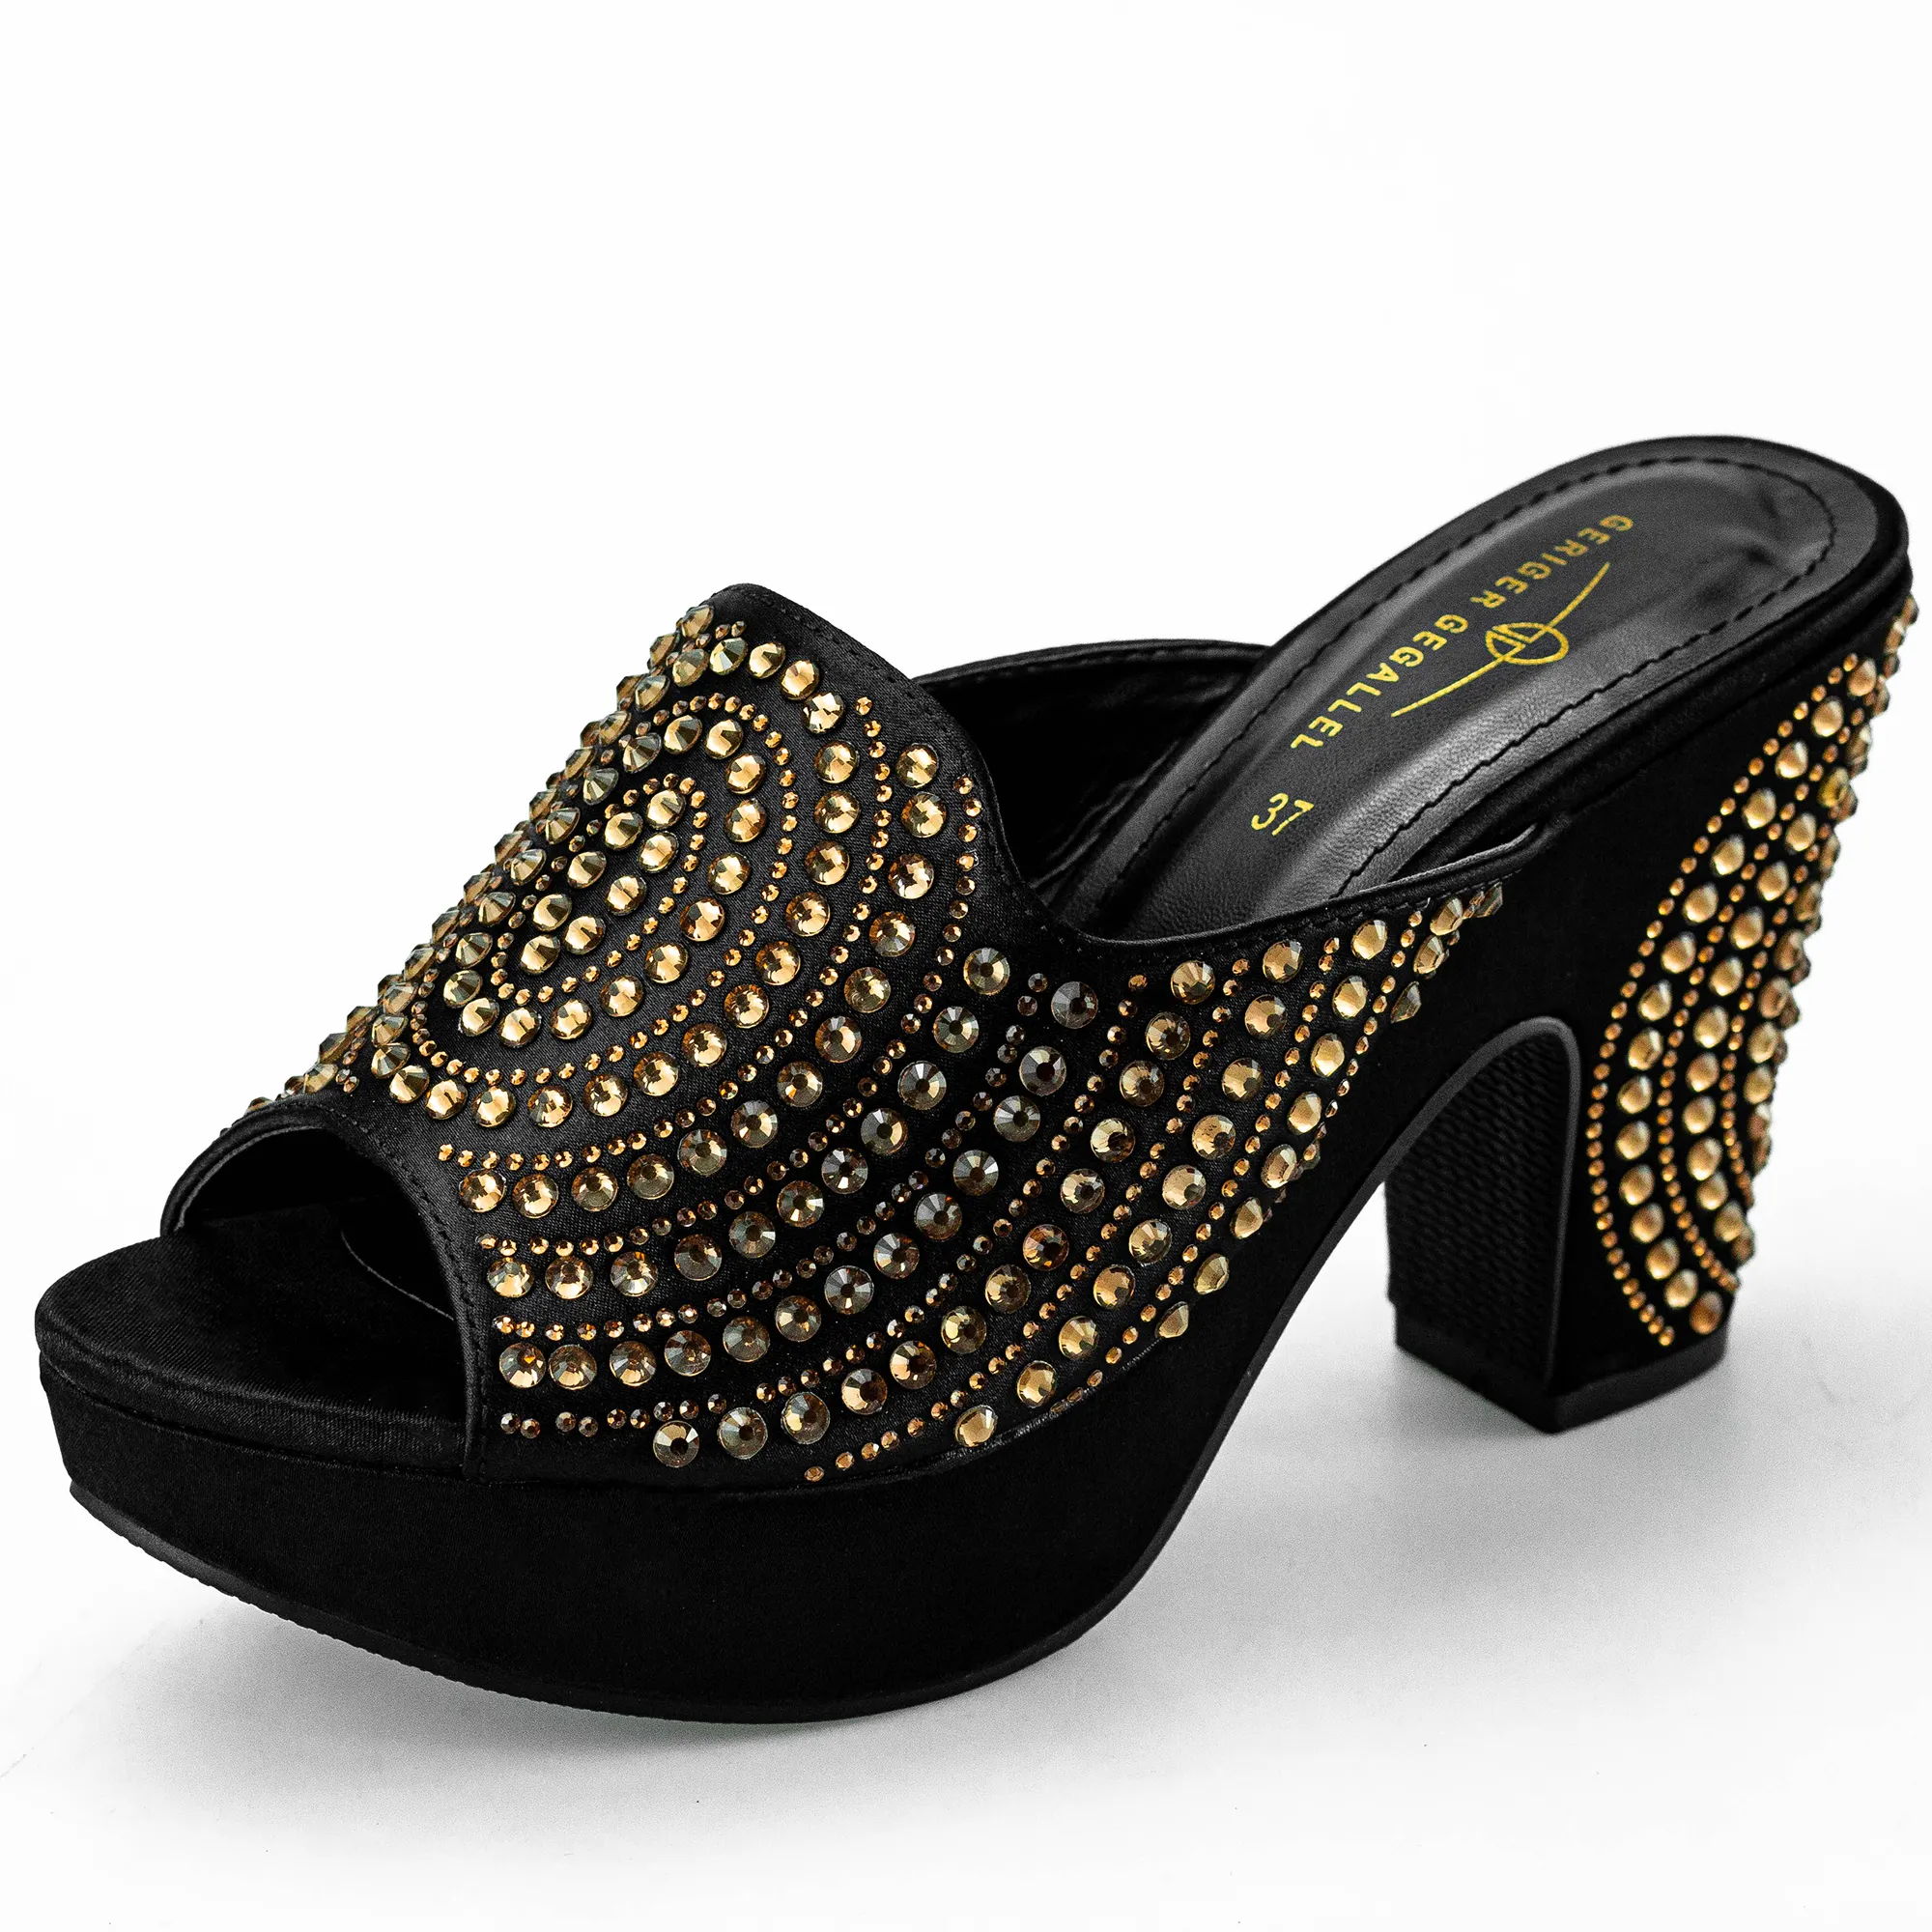 Party Peep Toe Rhinestone Platform Luxury High Heel Sandals Heels Ladies Shoes Mules Heels For Women